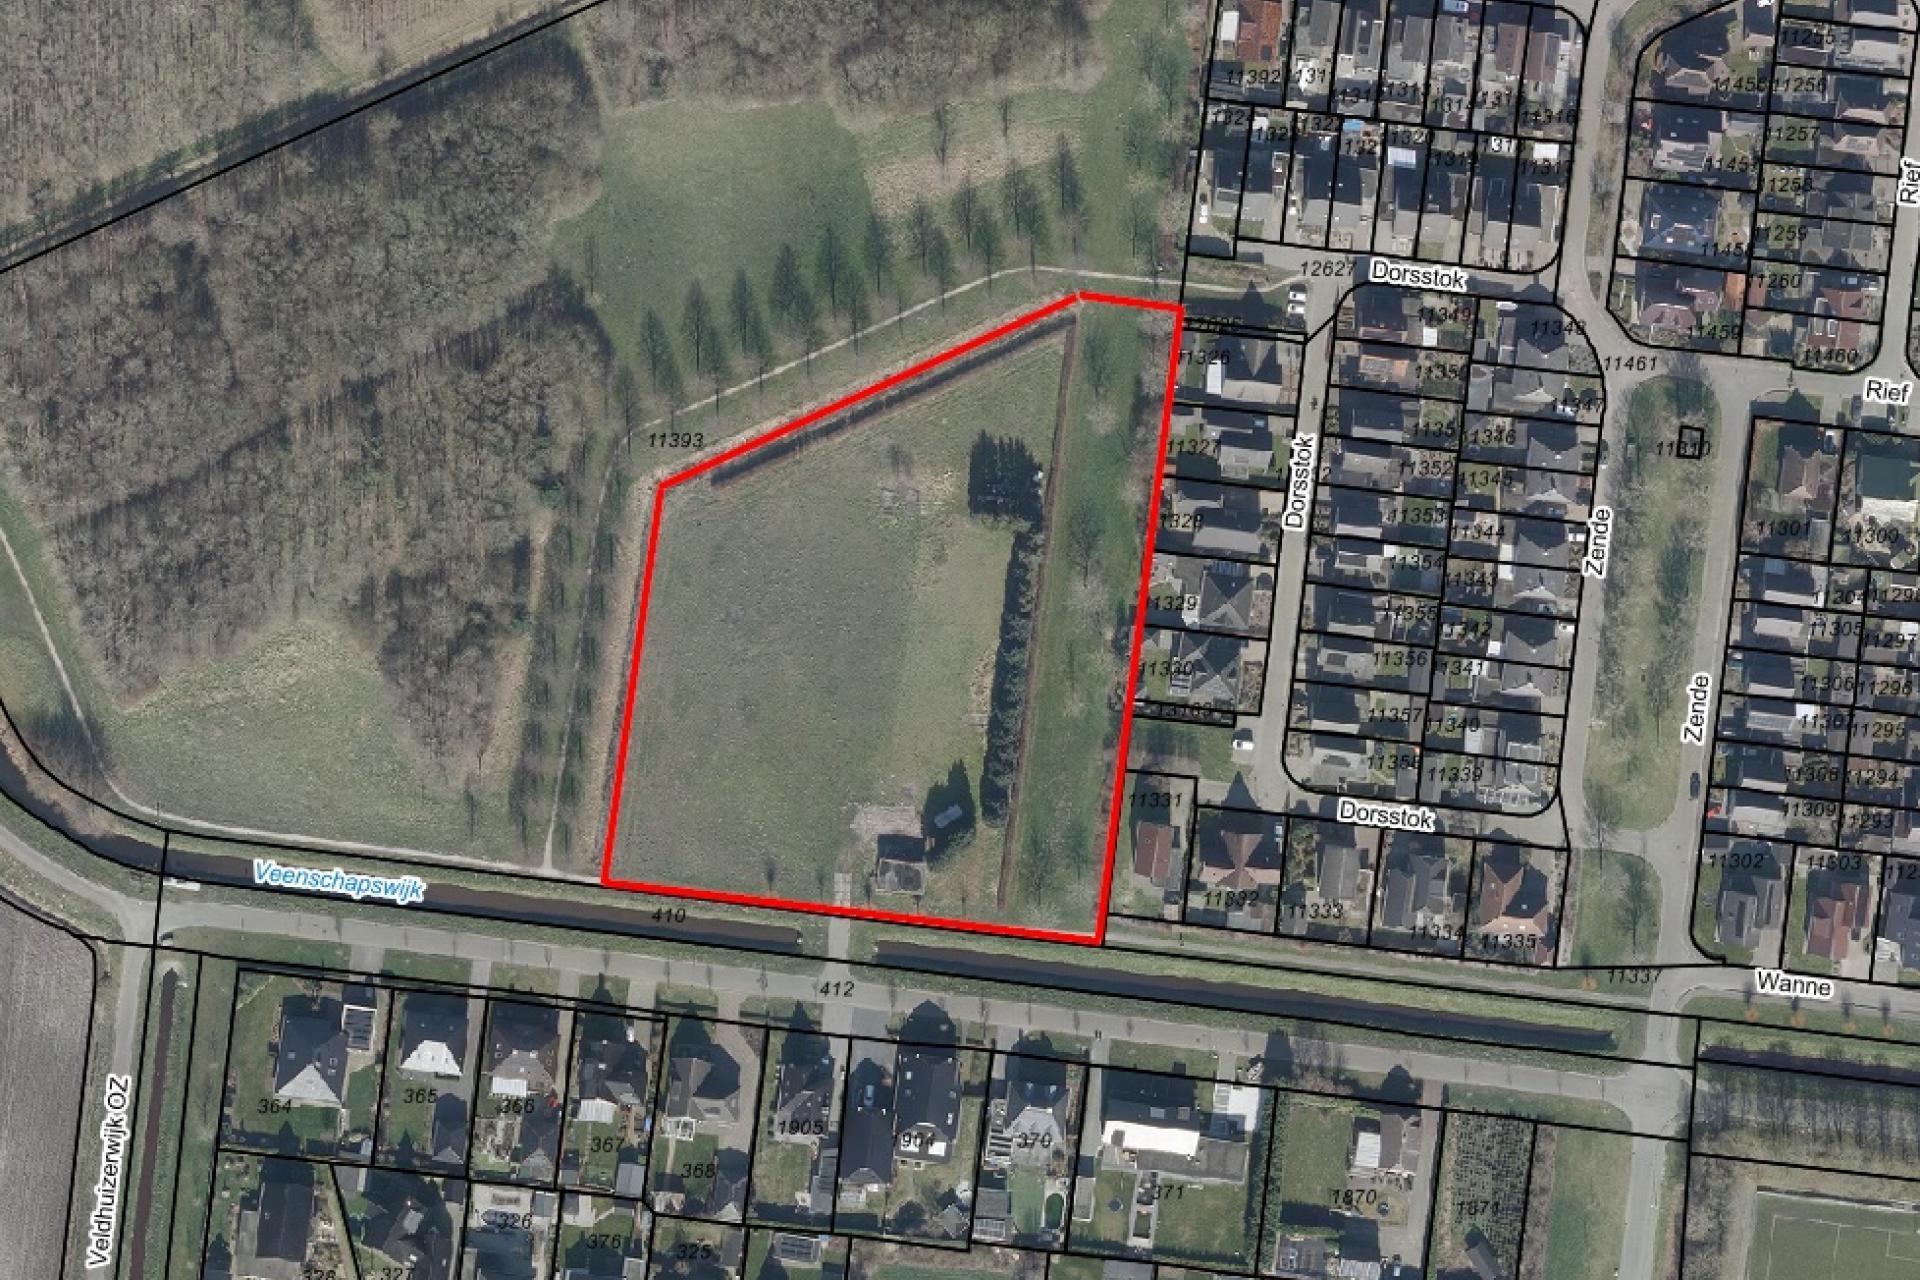 Luchtfoto van Veenschapswijk. De locatie is rood omcirkeld.